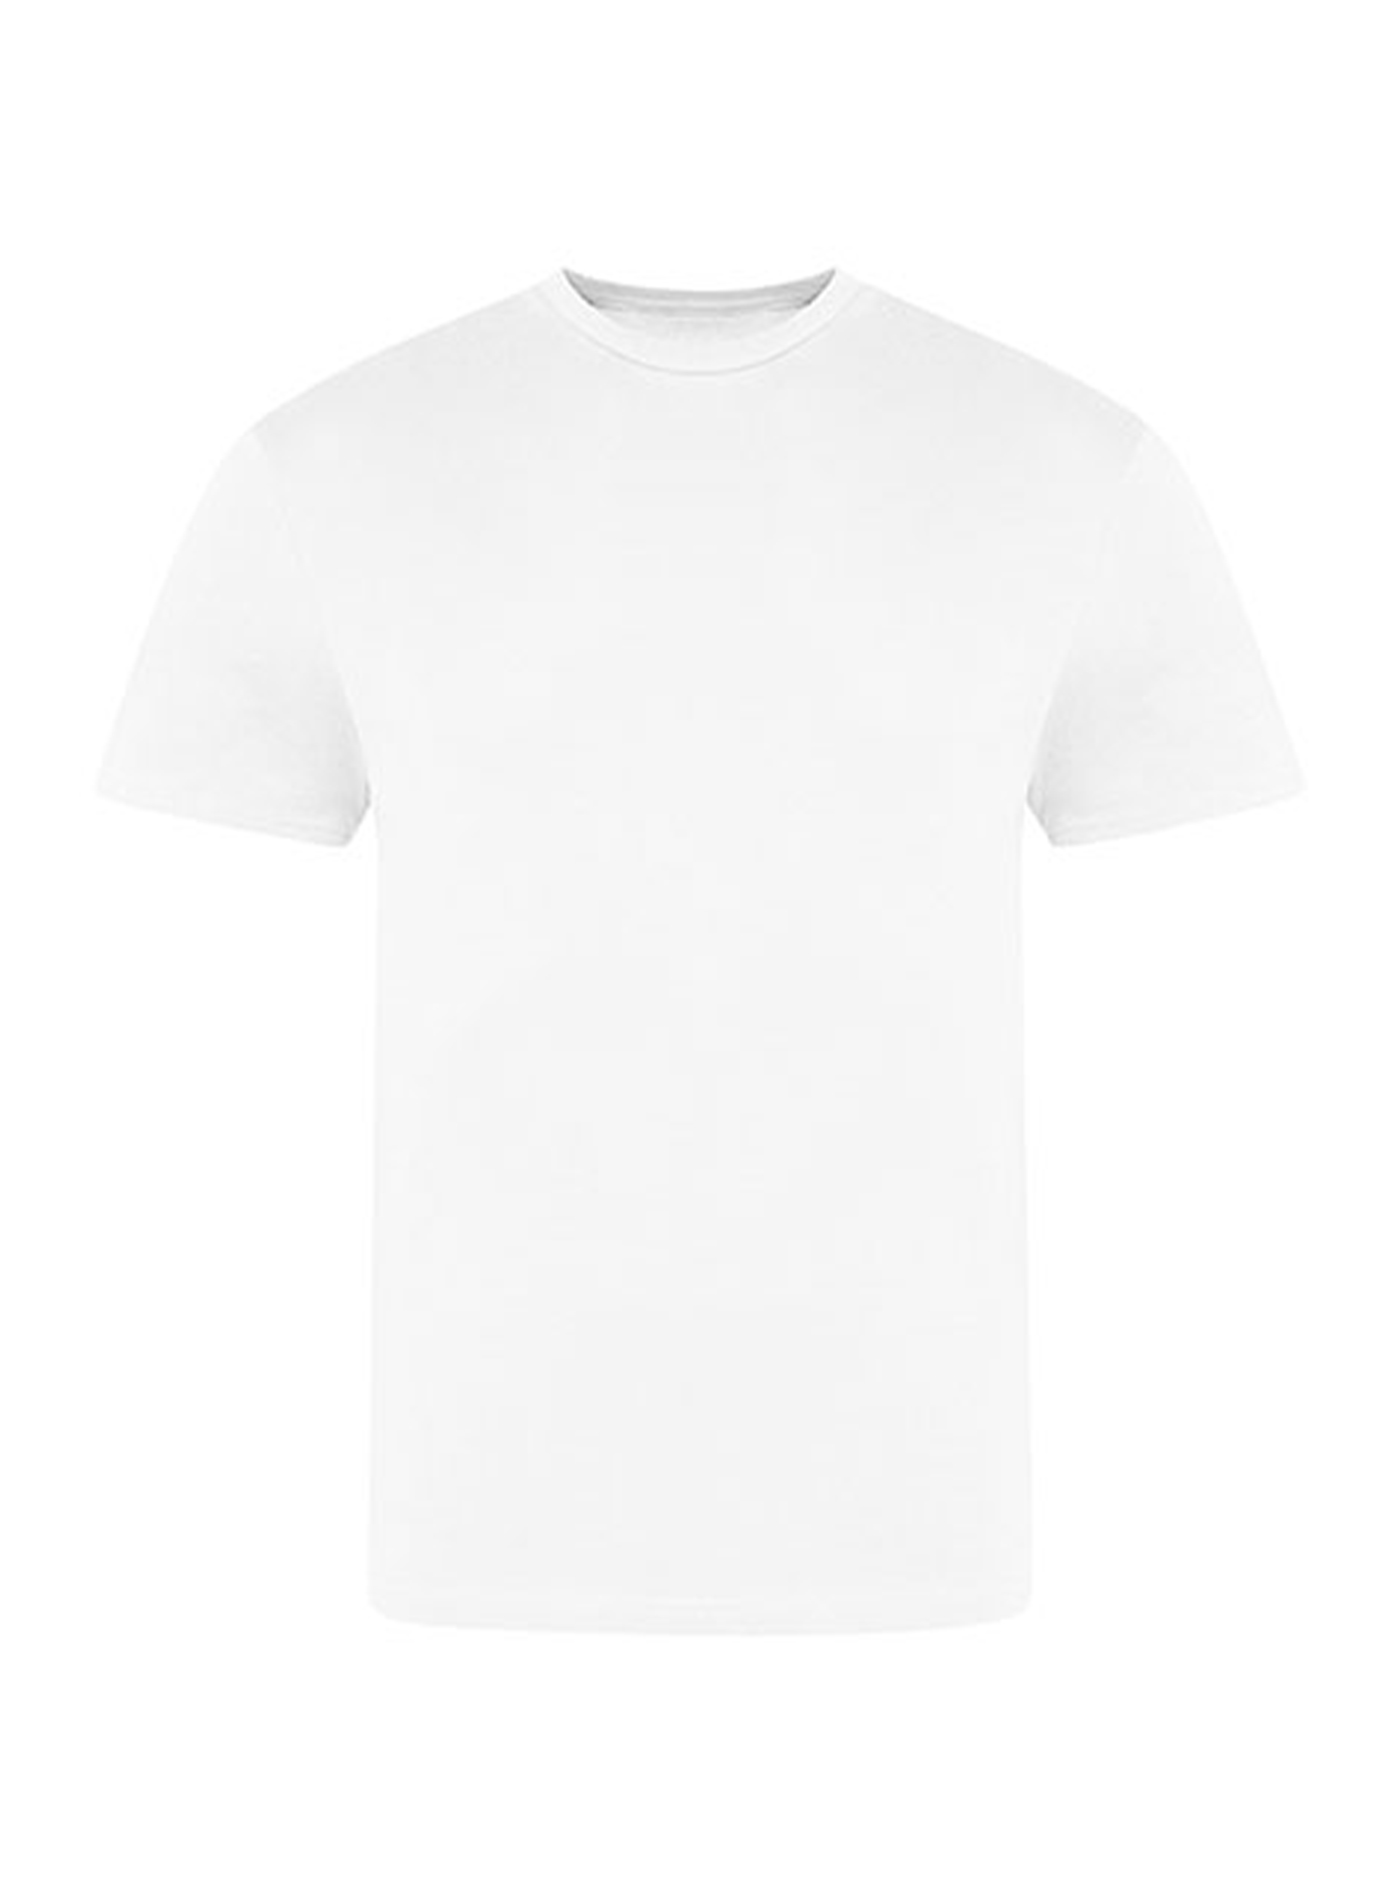 Pánské tričko Just Ts - Bílá XL